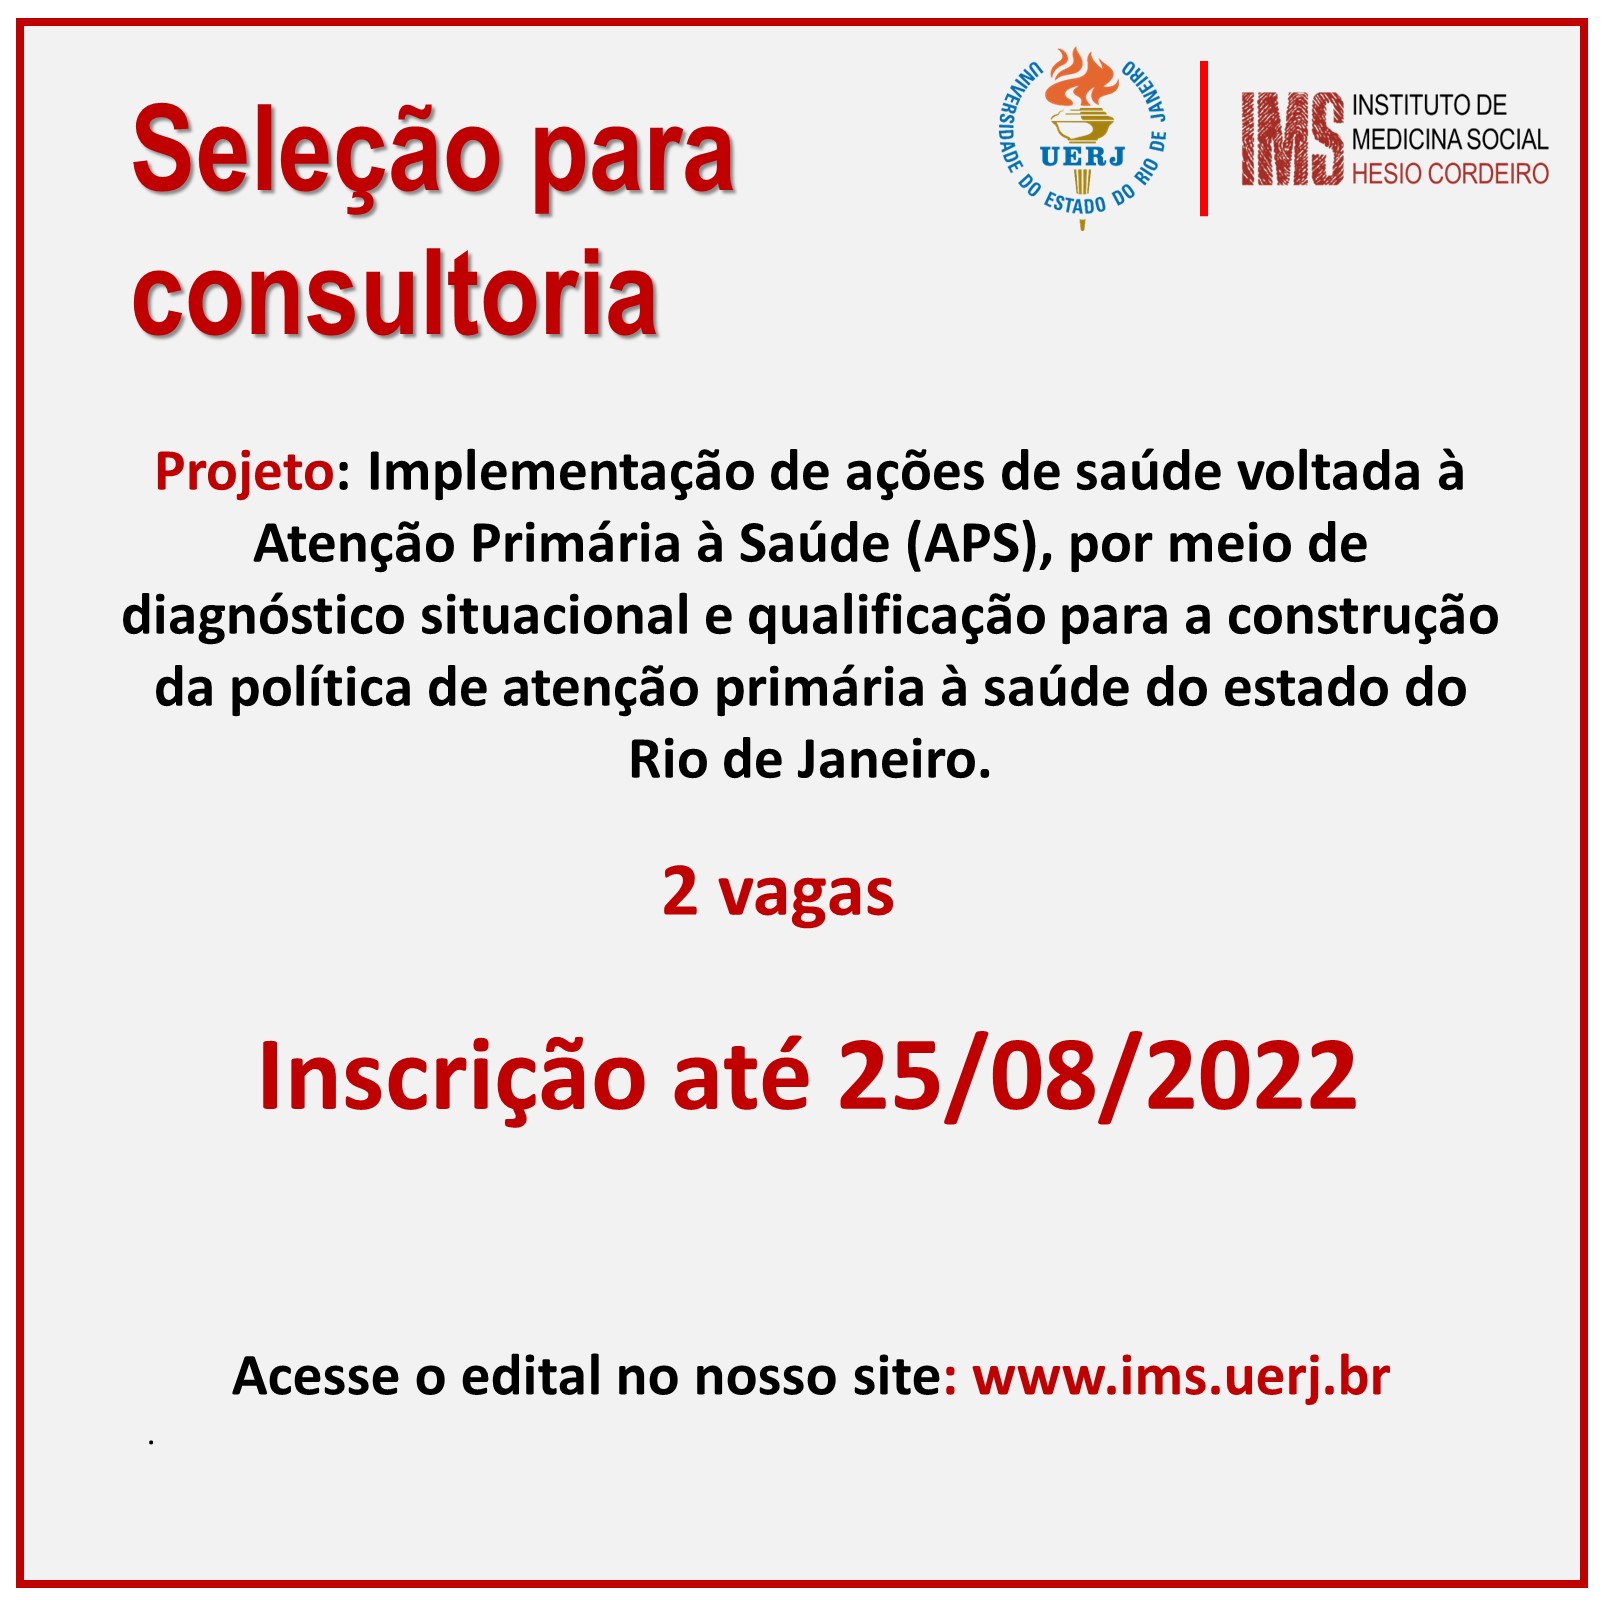 IMS seleciona consultores para projeto voltado à Atenção Primária à Saúde (APS) no estado do Rio de Janeiro: RESULTADO FINAL